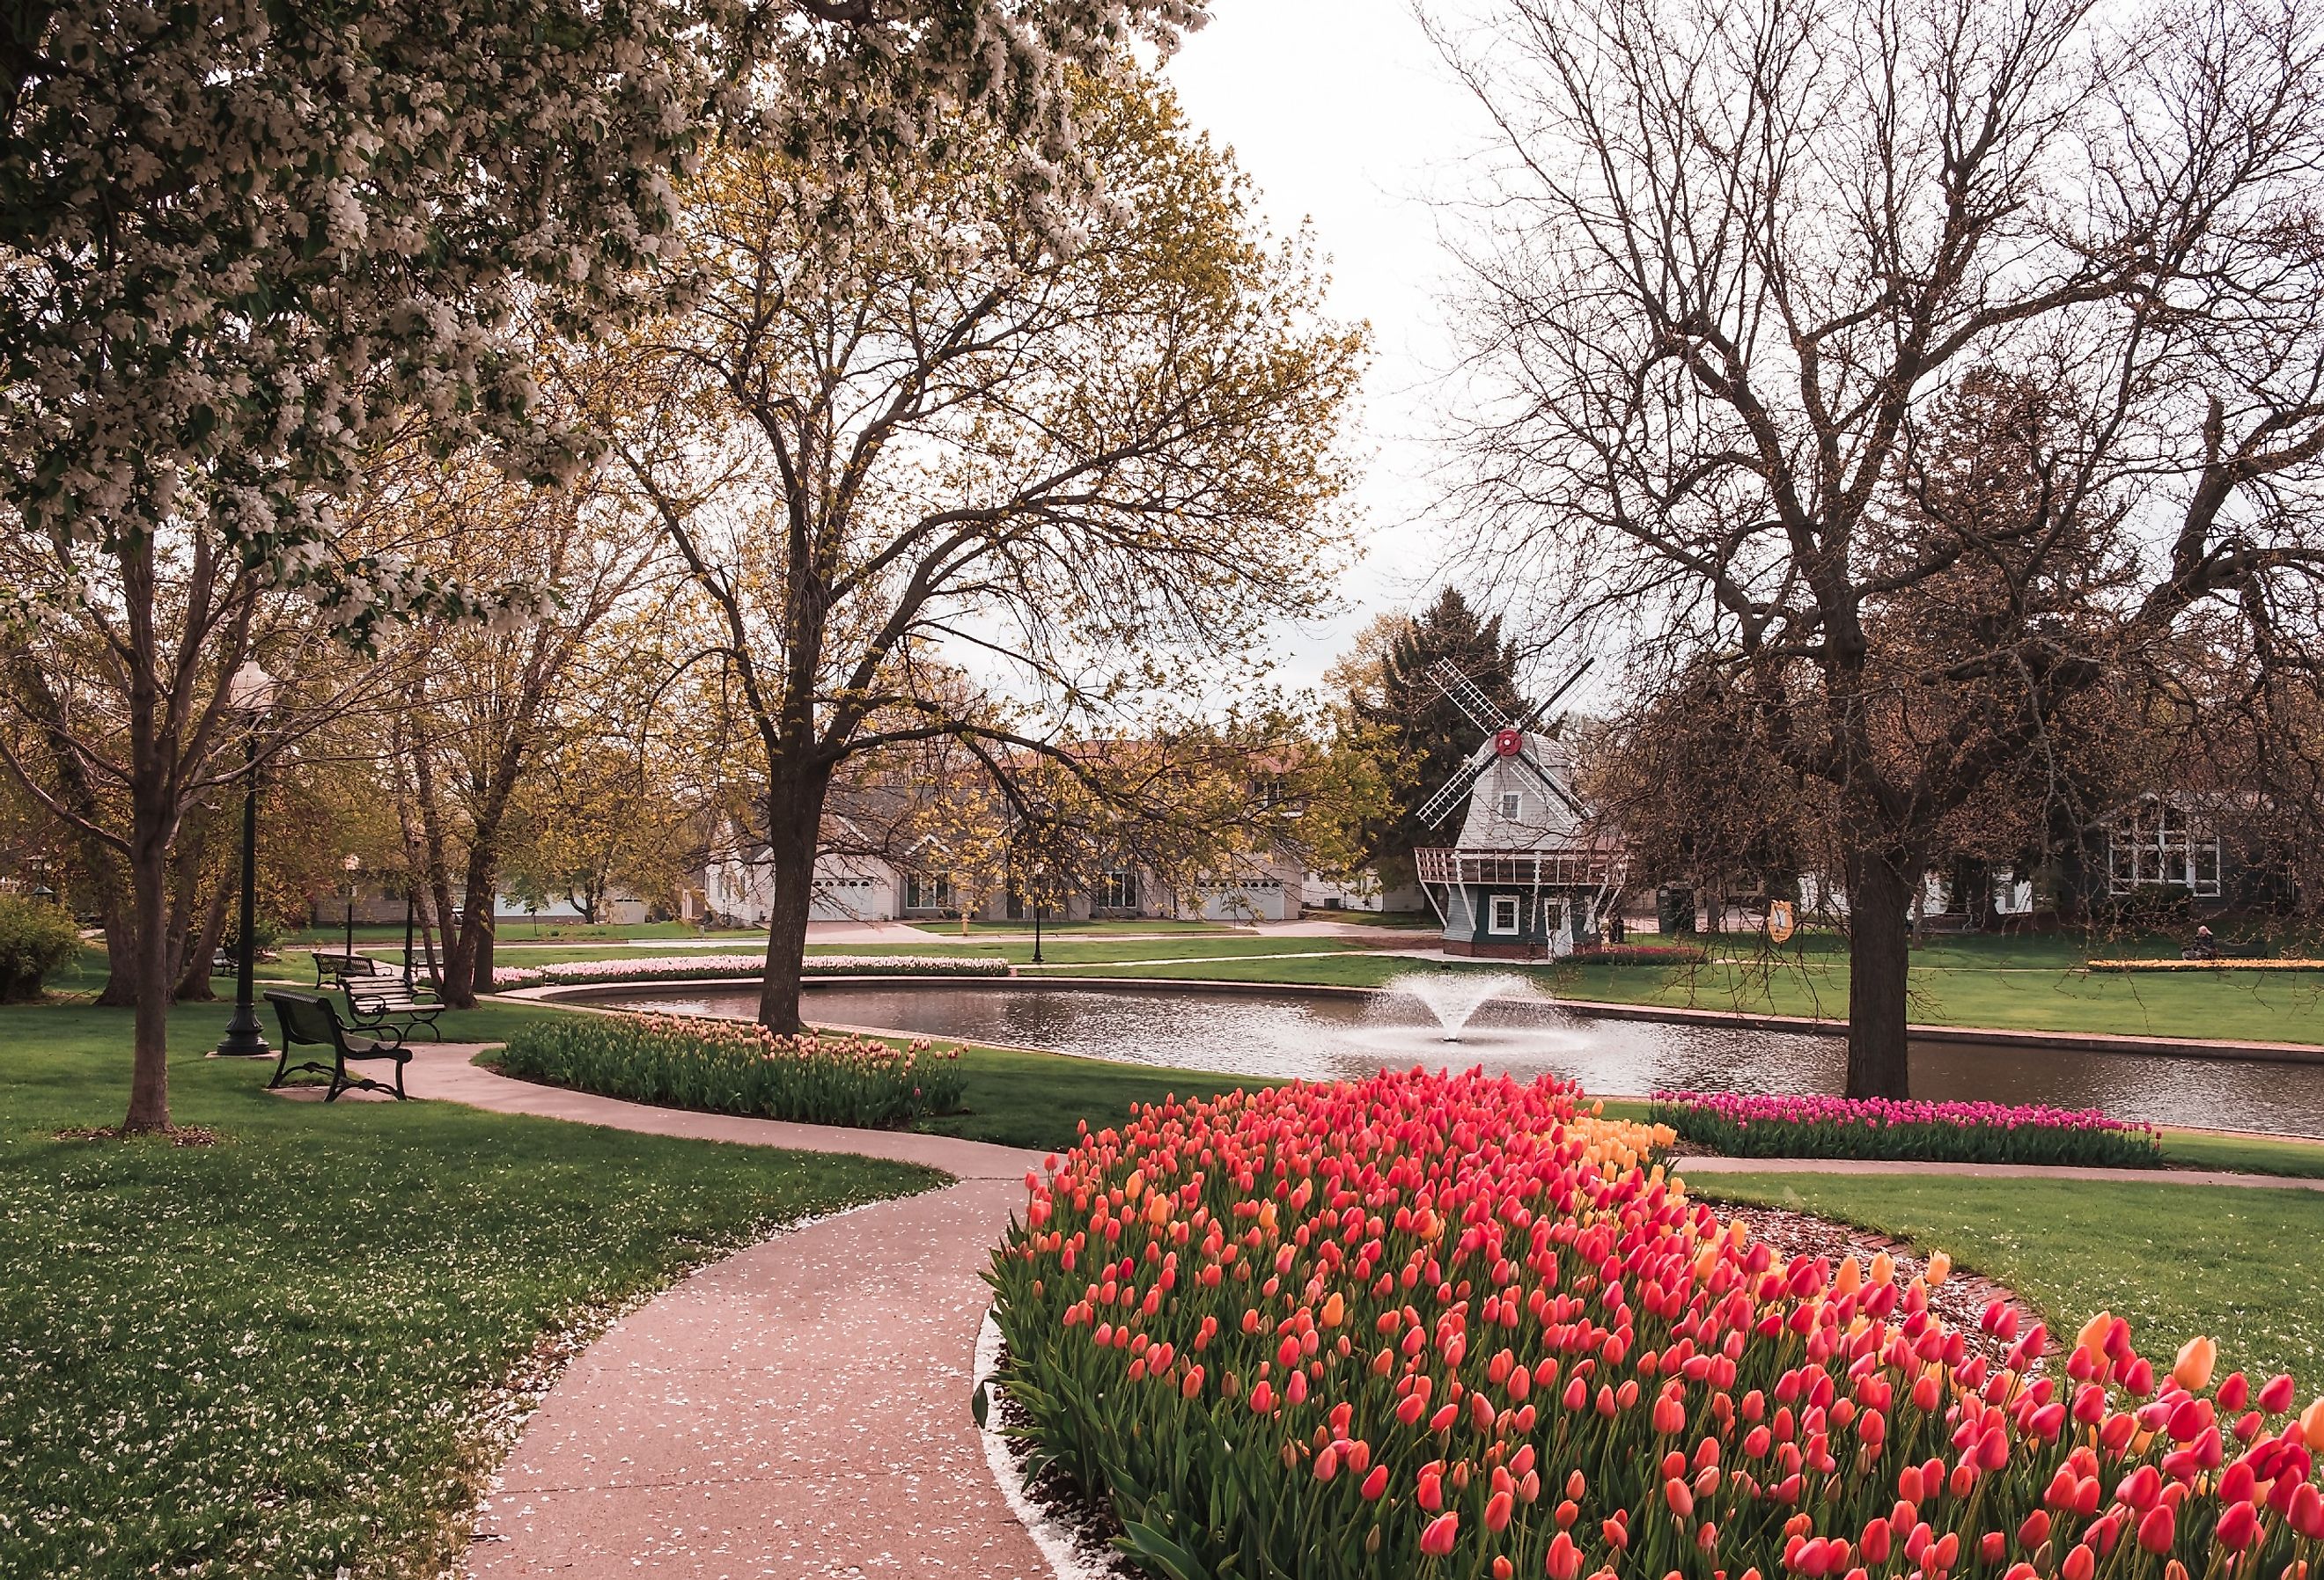 Pathway lined with beds of Tulips in Sunken Gardens Park, Pella, Iowa.